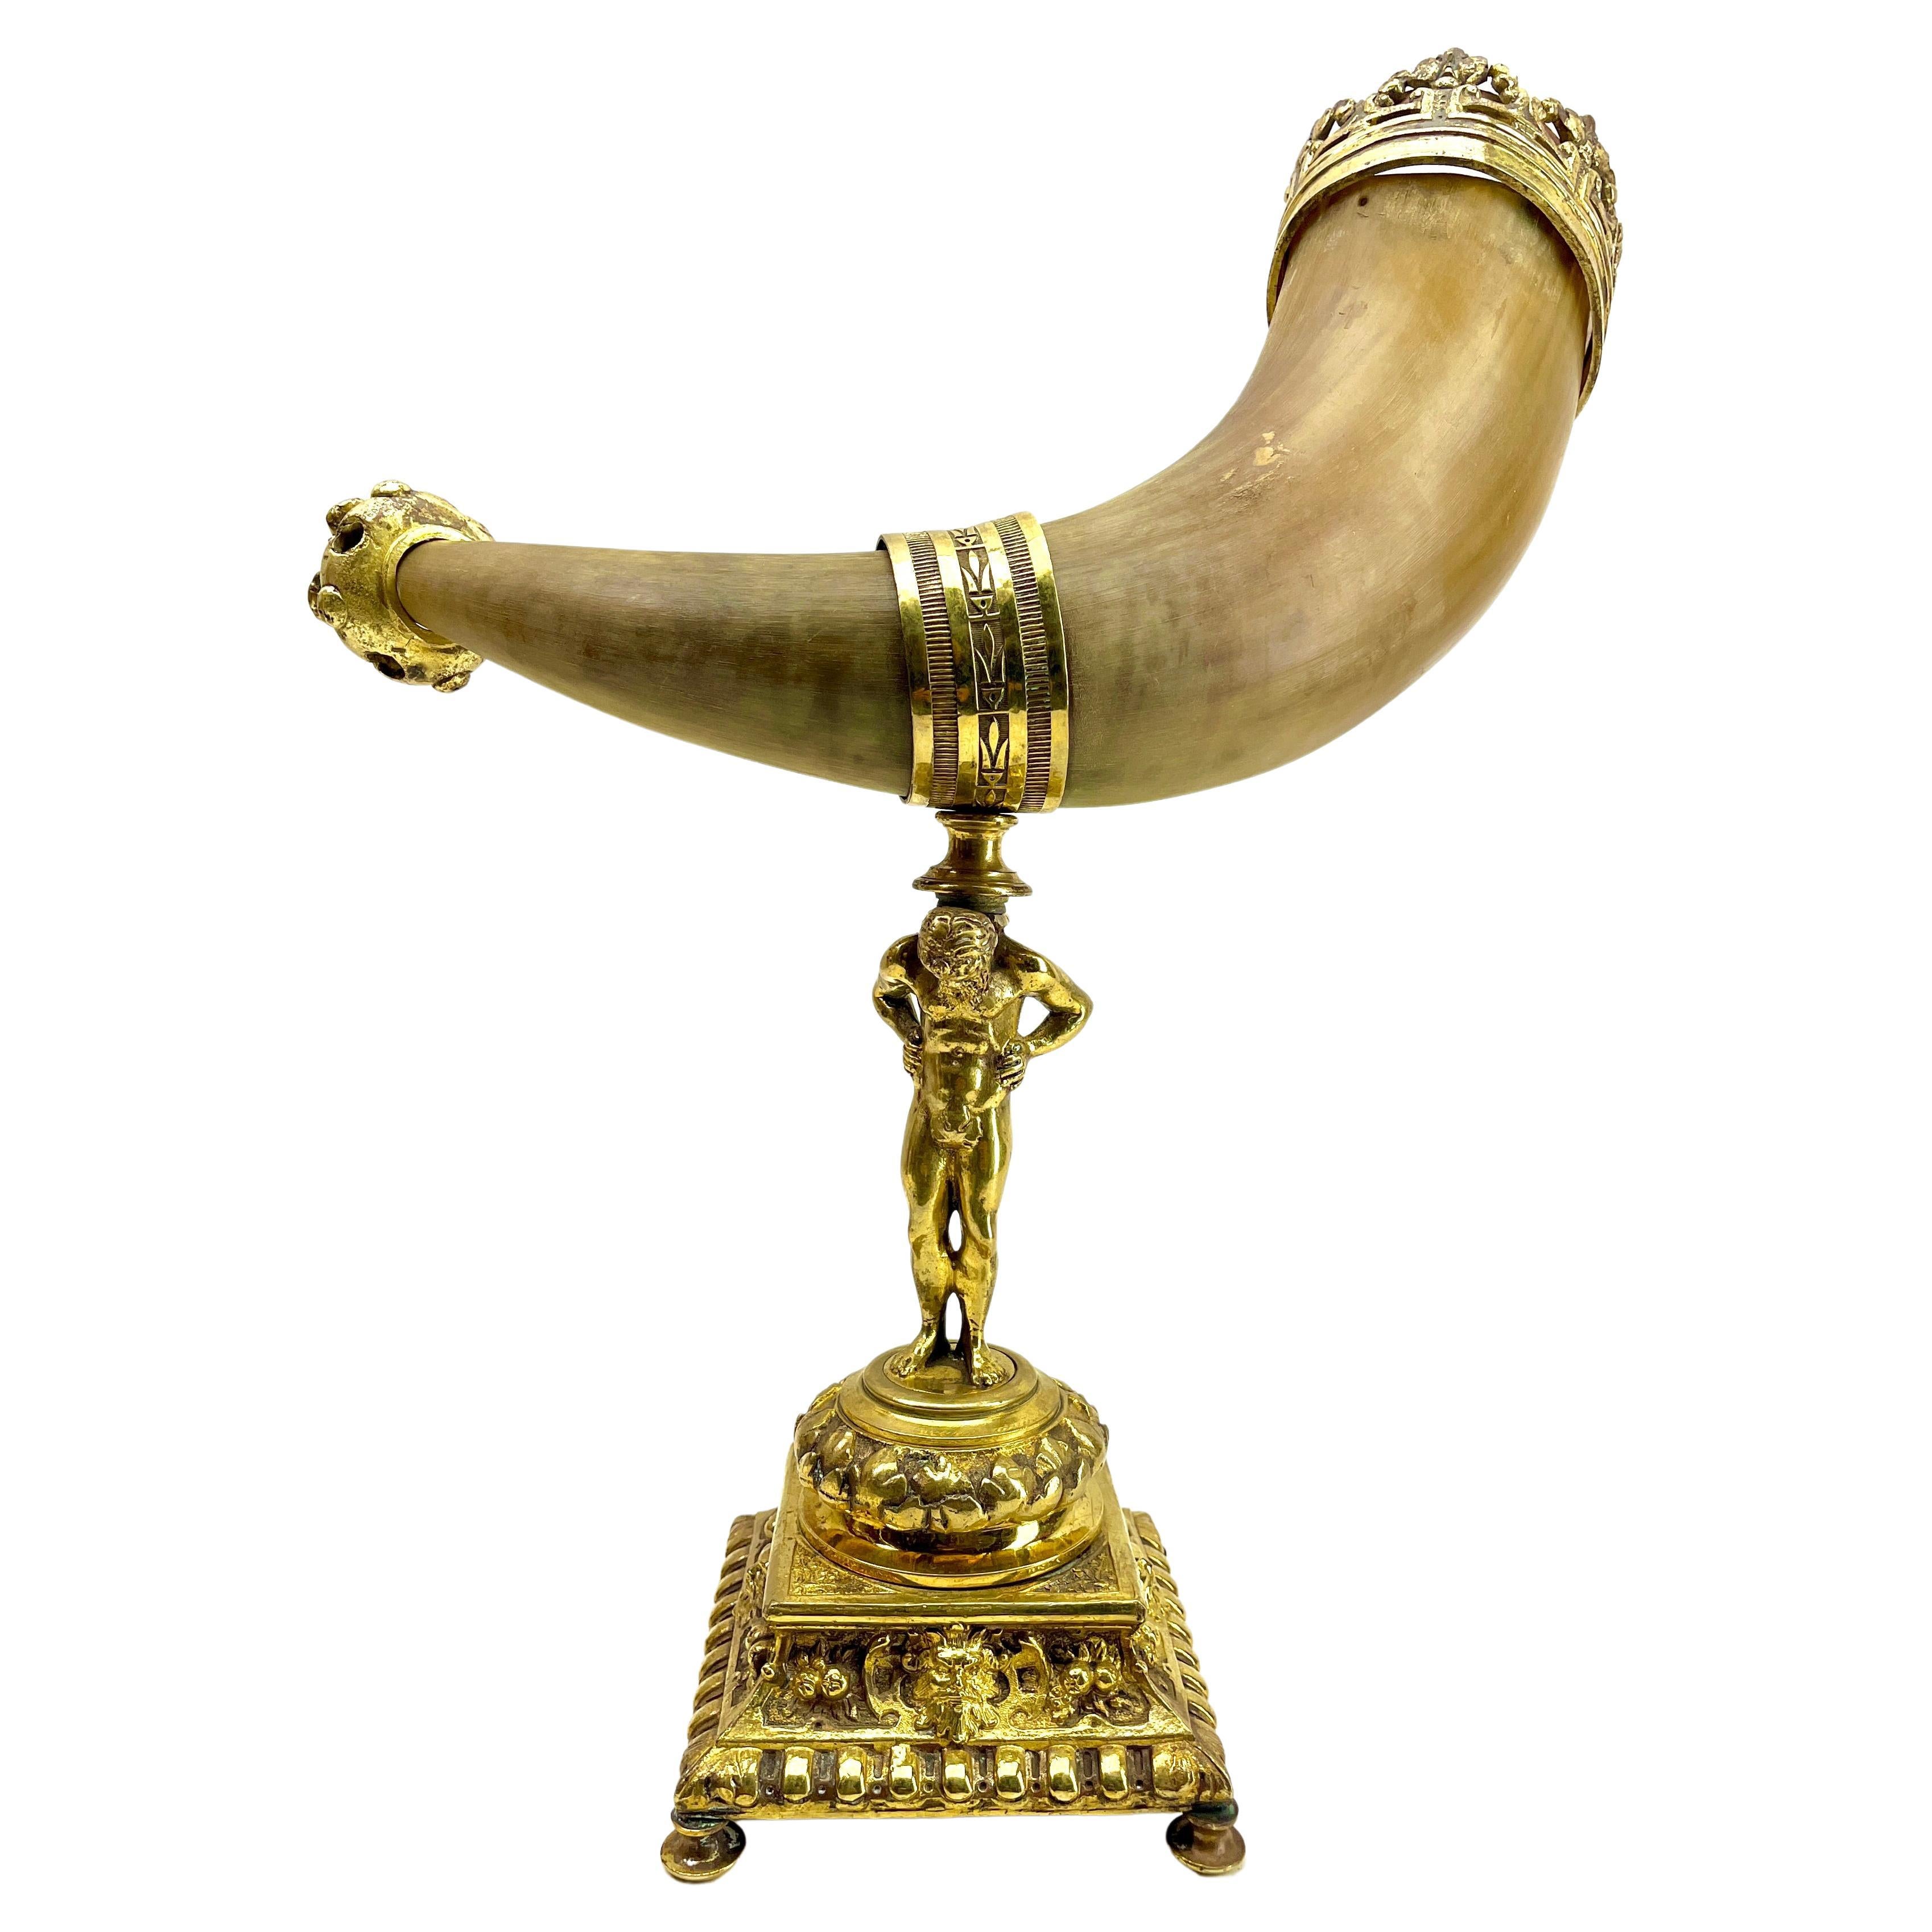 Horn und vergoldete Bronze Ornamente auf gegossenem Stand montiert Cornucopia